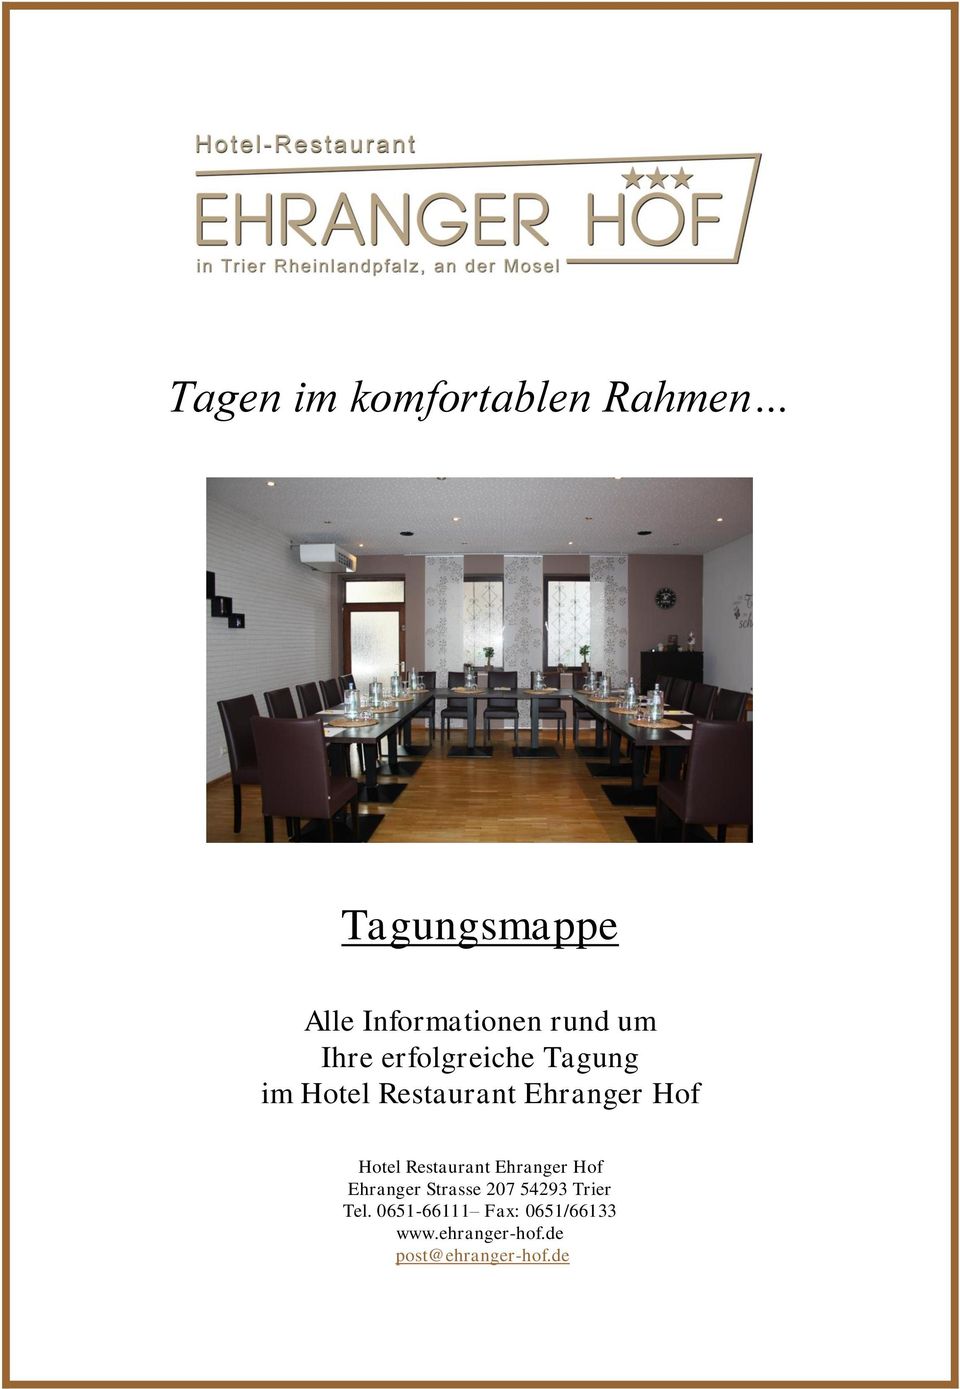 Hotel Restaurant Ehranger Hof Ehranger Strasse 207 54293 Trier